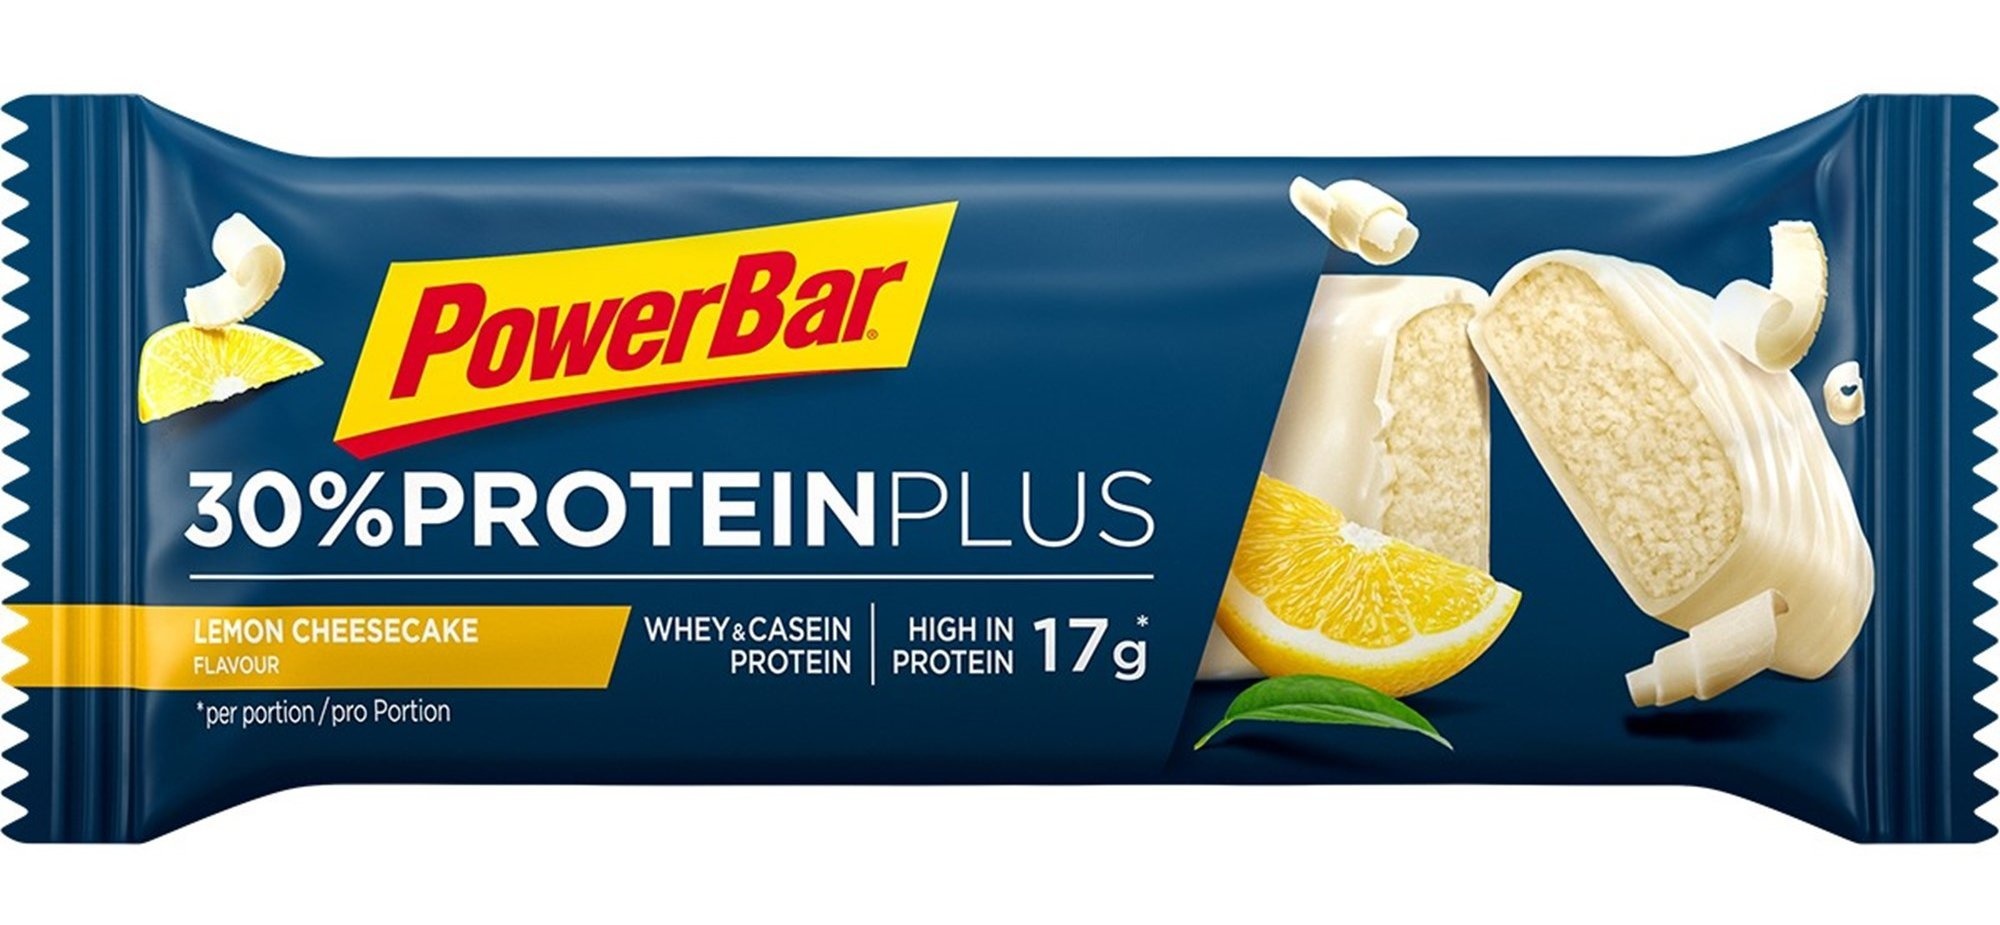  - PowerBar 30% Protein Plus Lemon Cheesecake